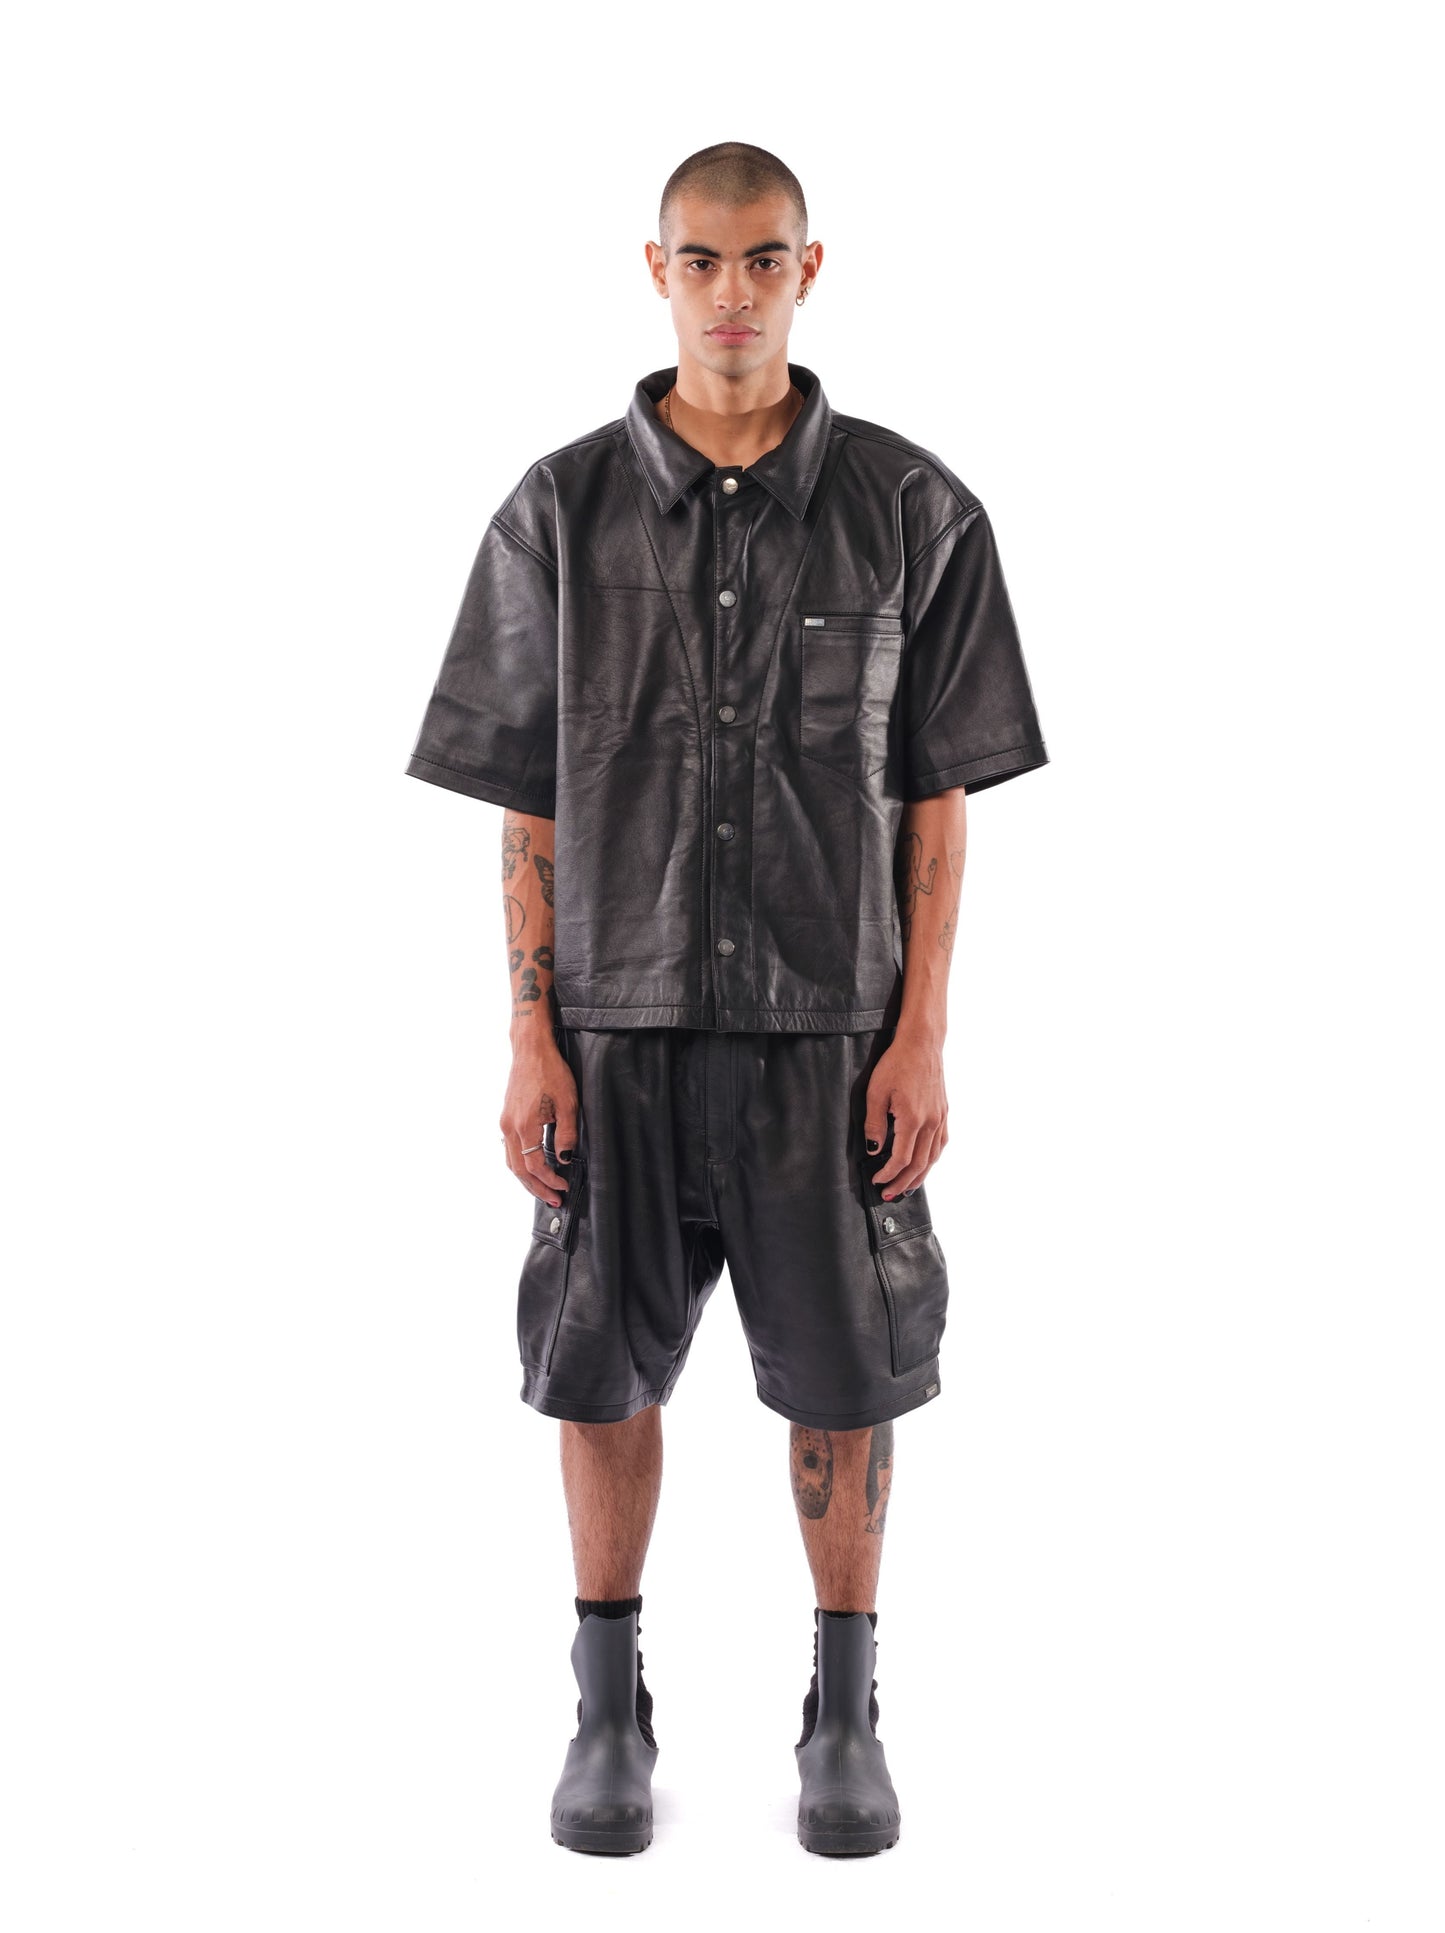 Mace Leather Cargo Shorts (Black)